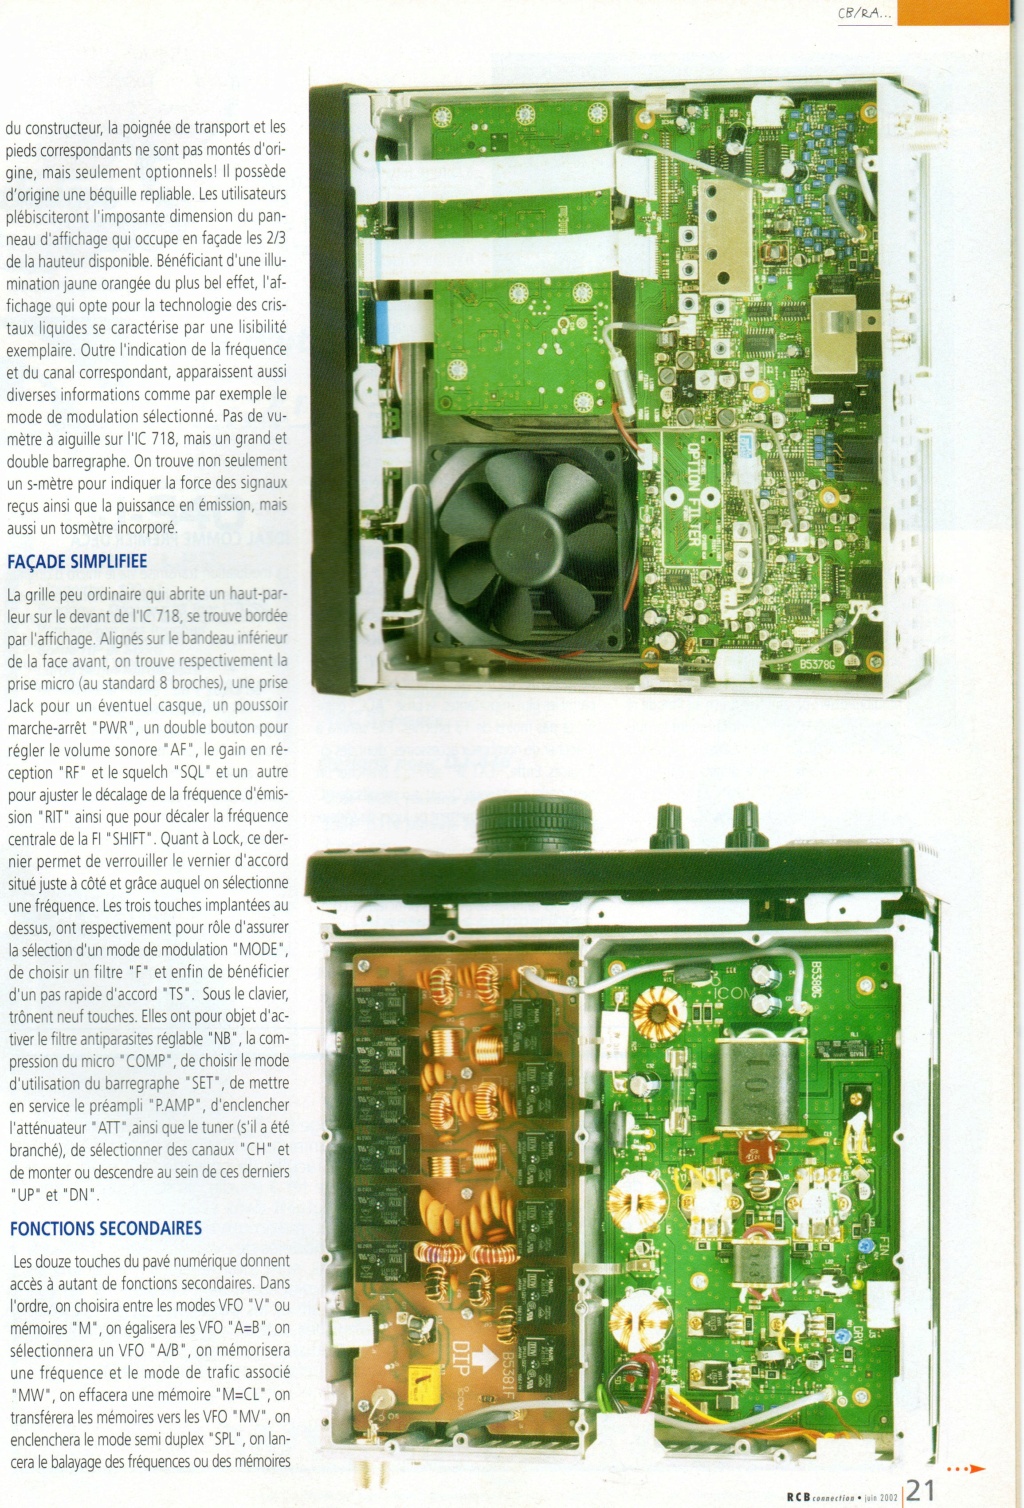 IC-718 - Icom IC-718 - Page 2 Img36511